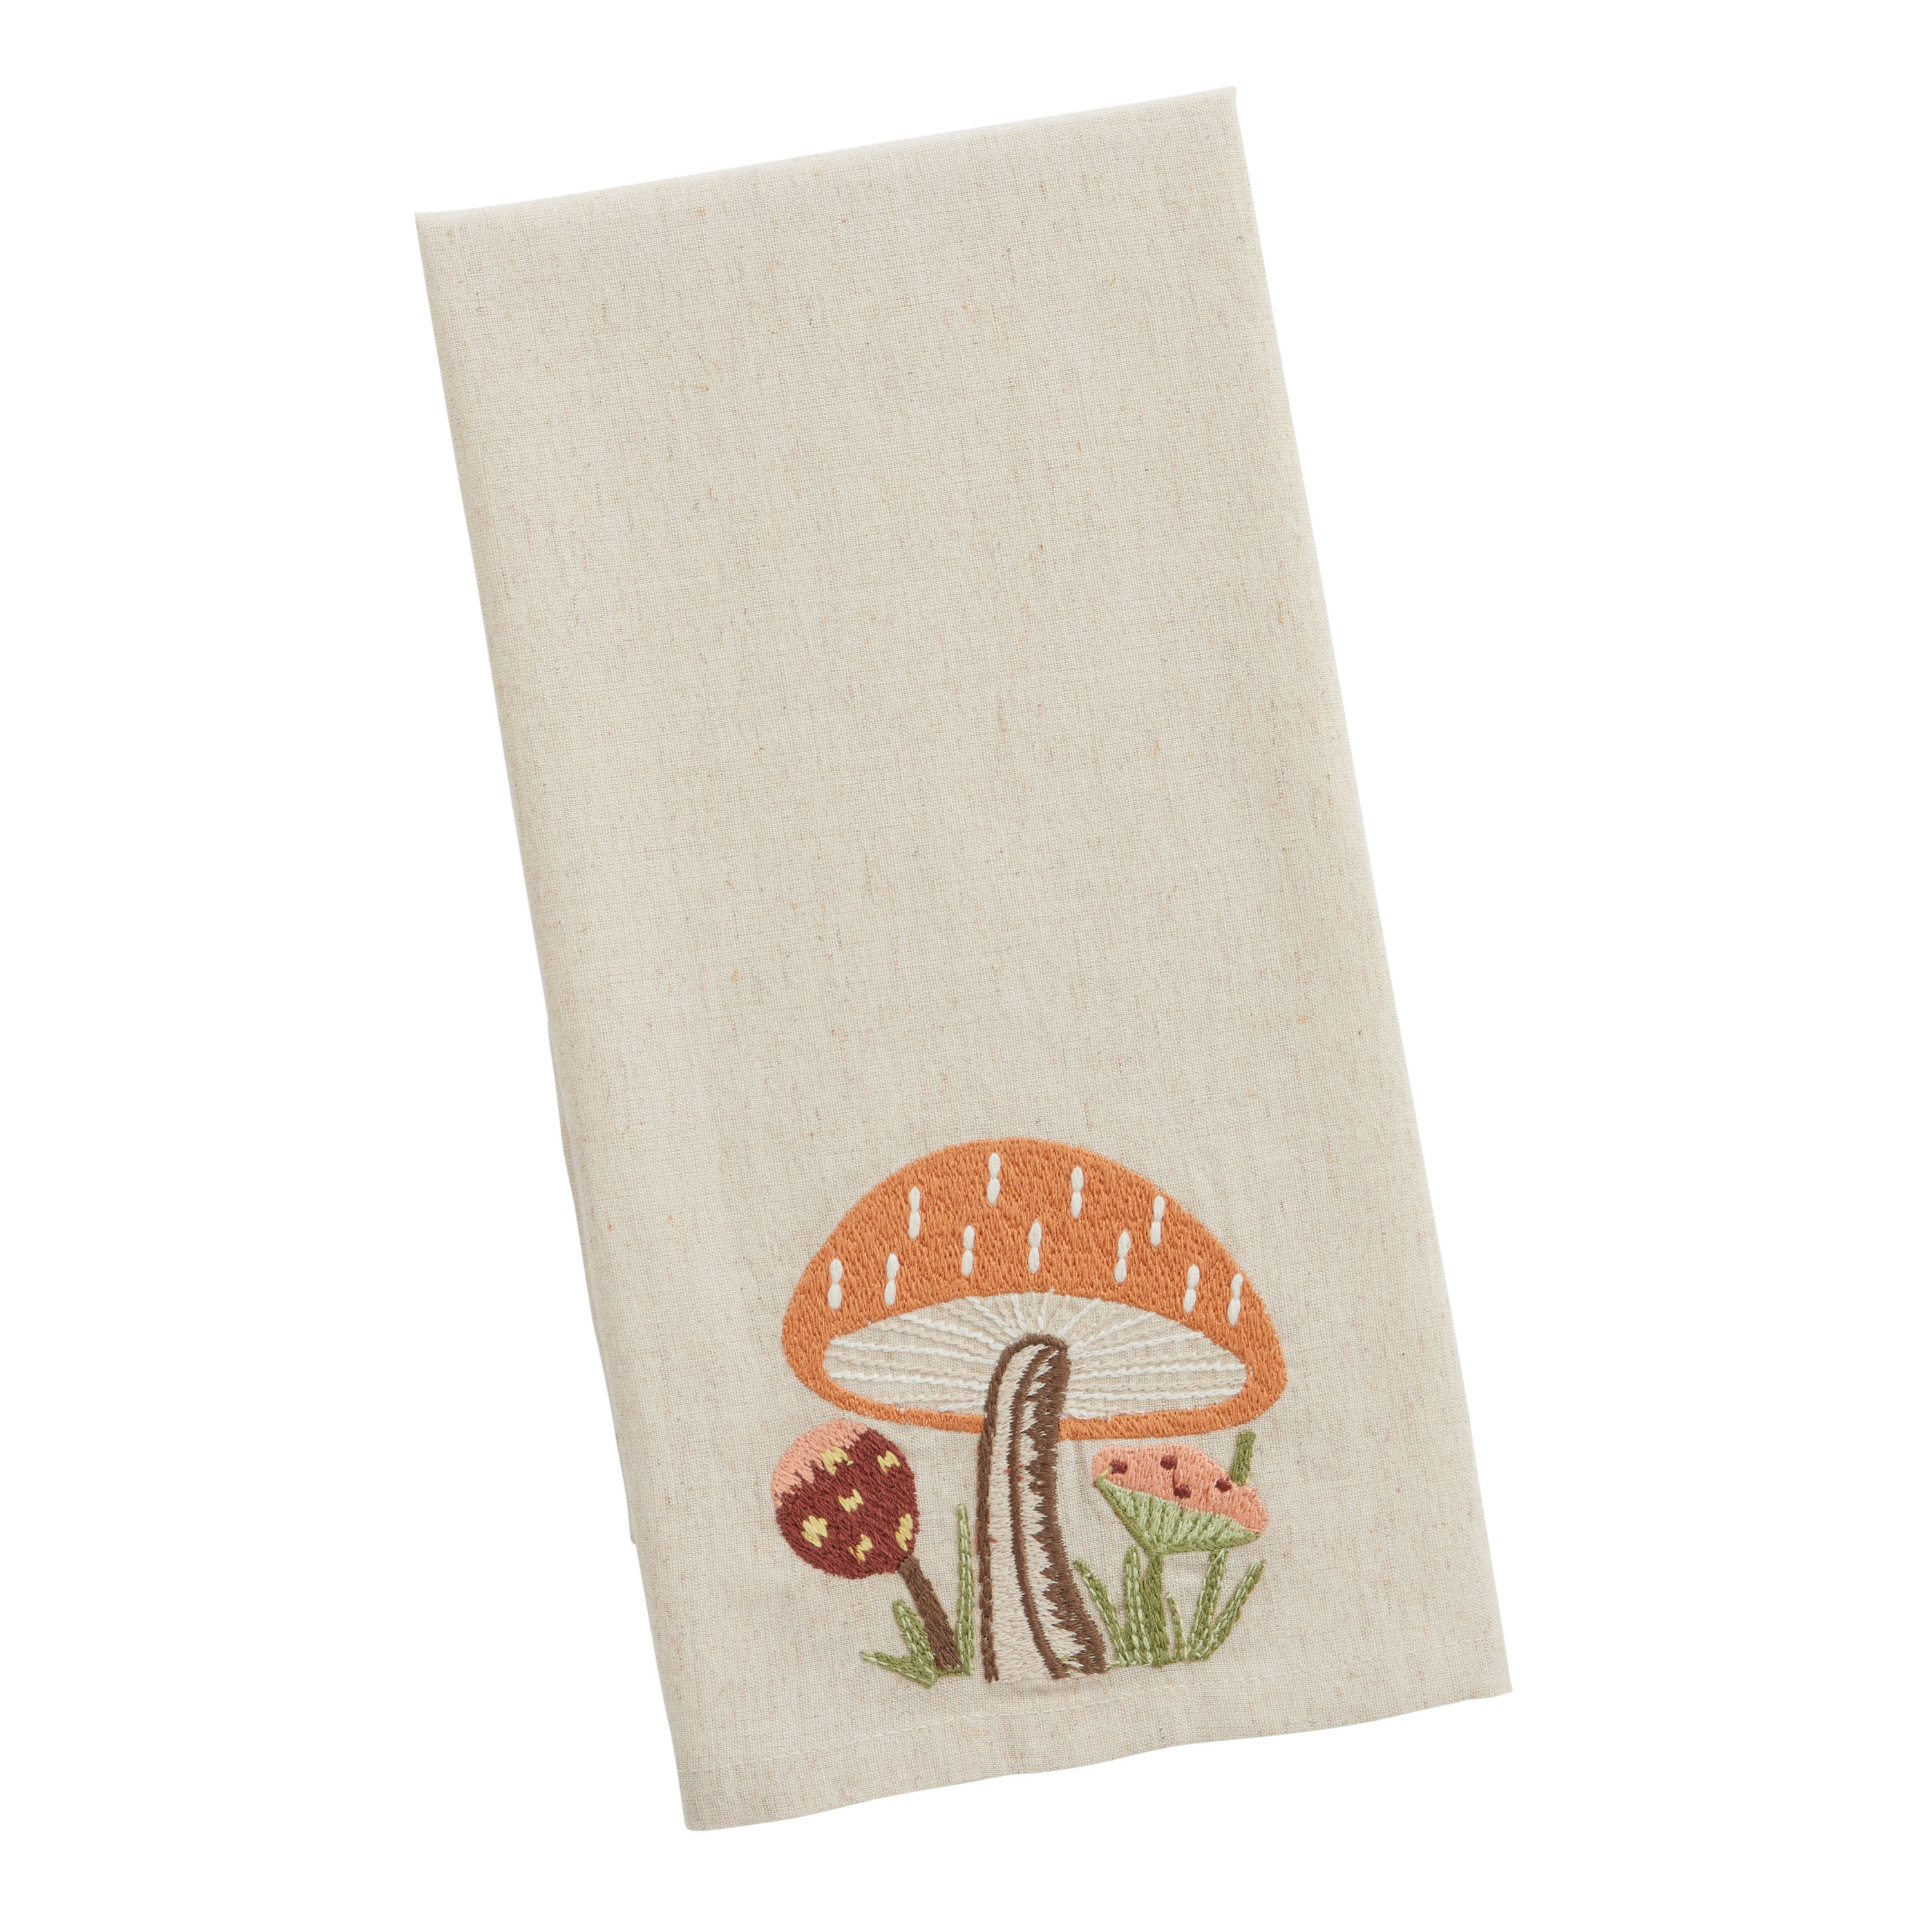  Cute Mushroom Kitchen Dish Towels Set of 2, Soft